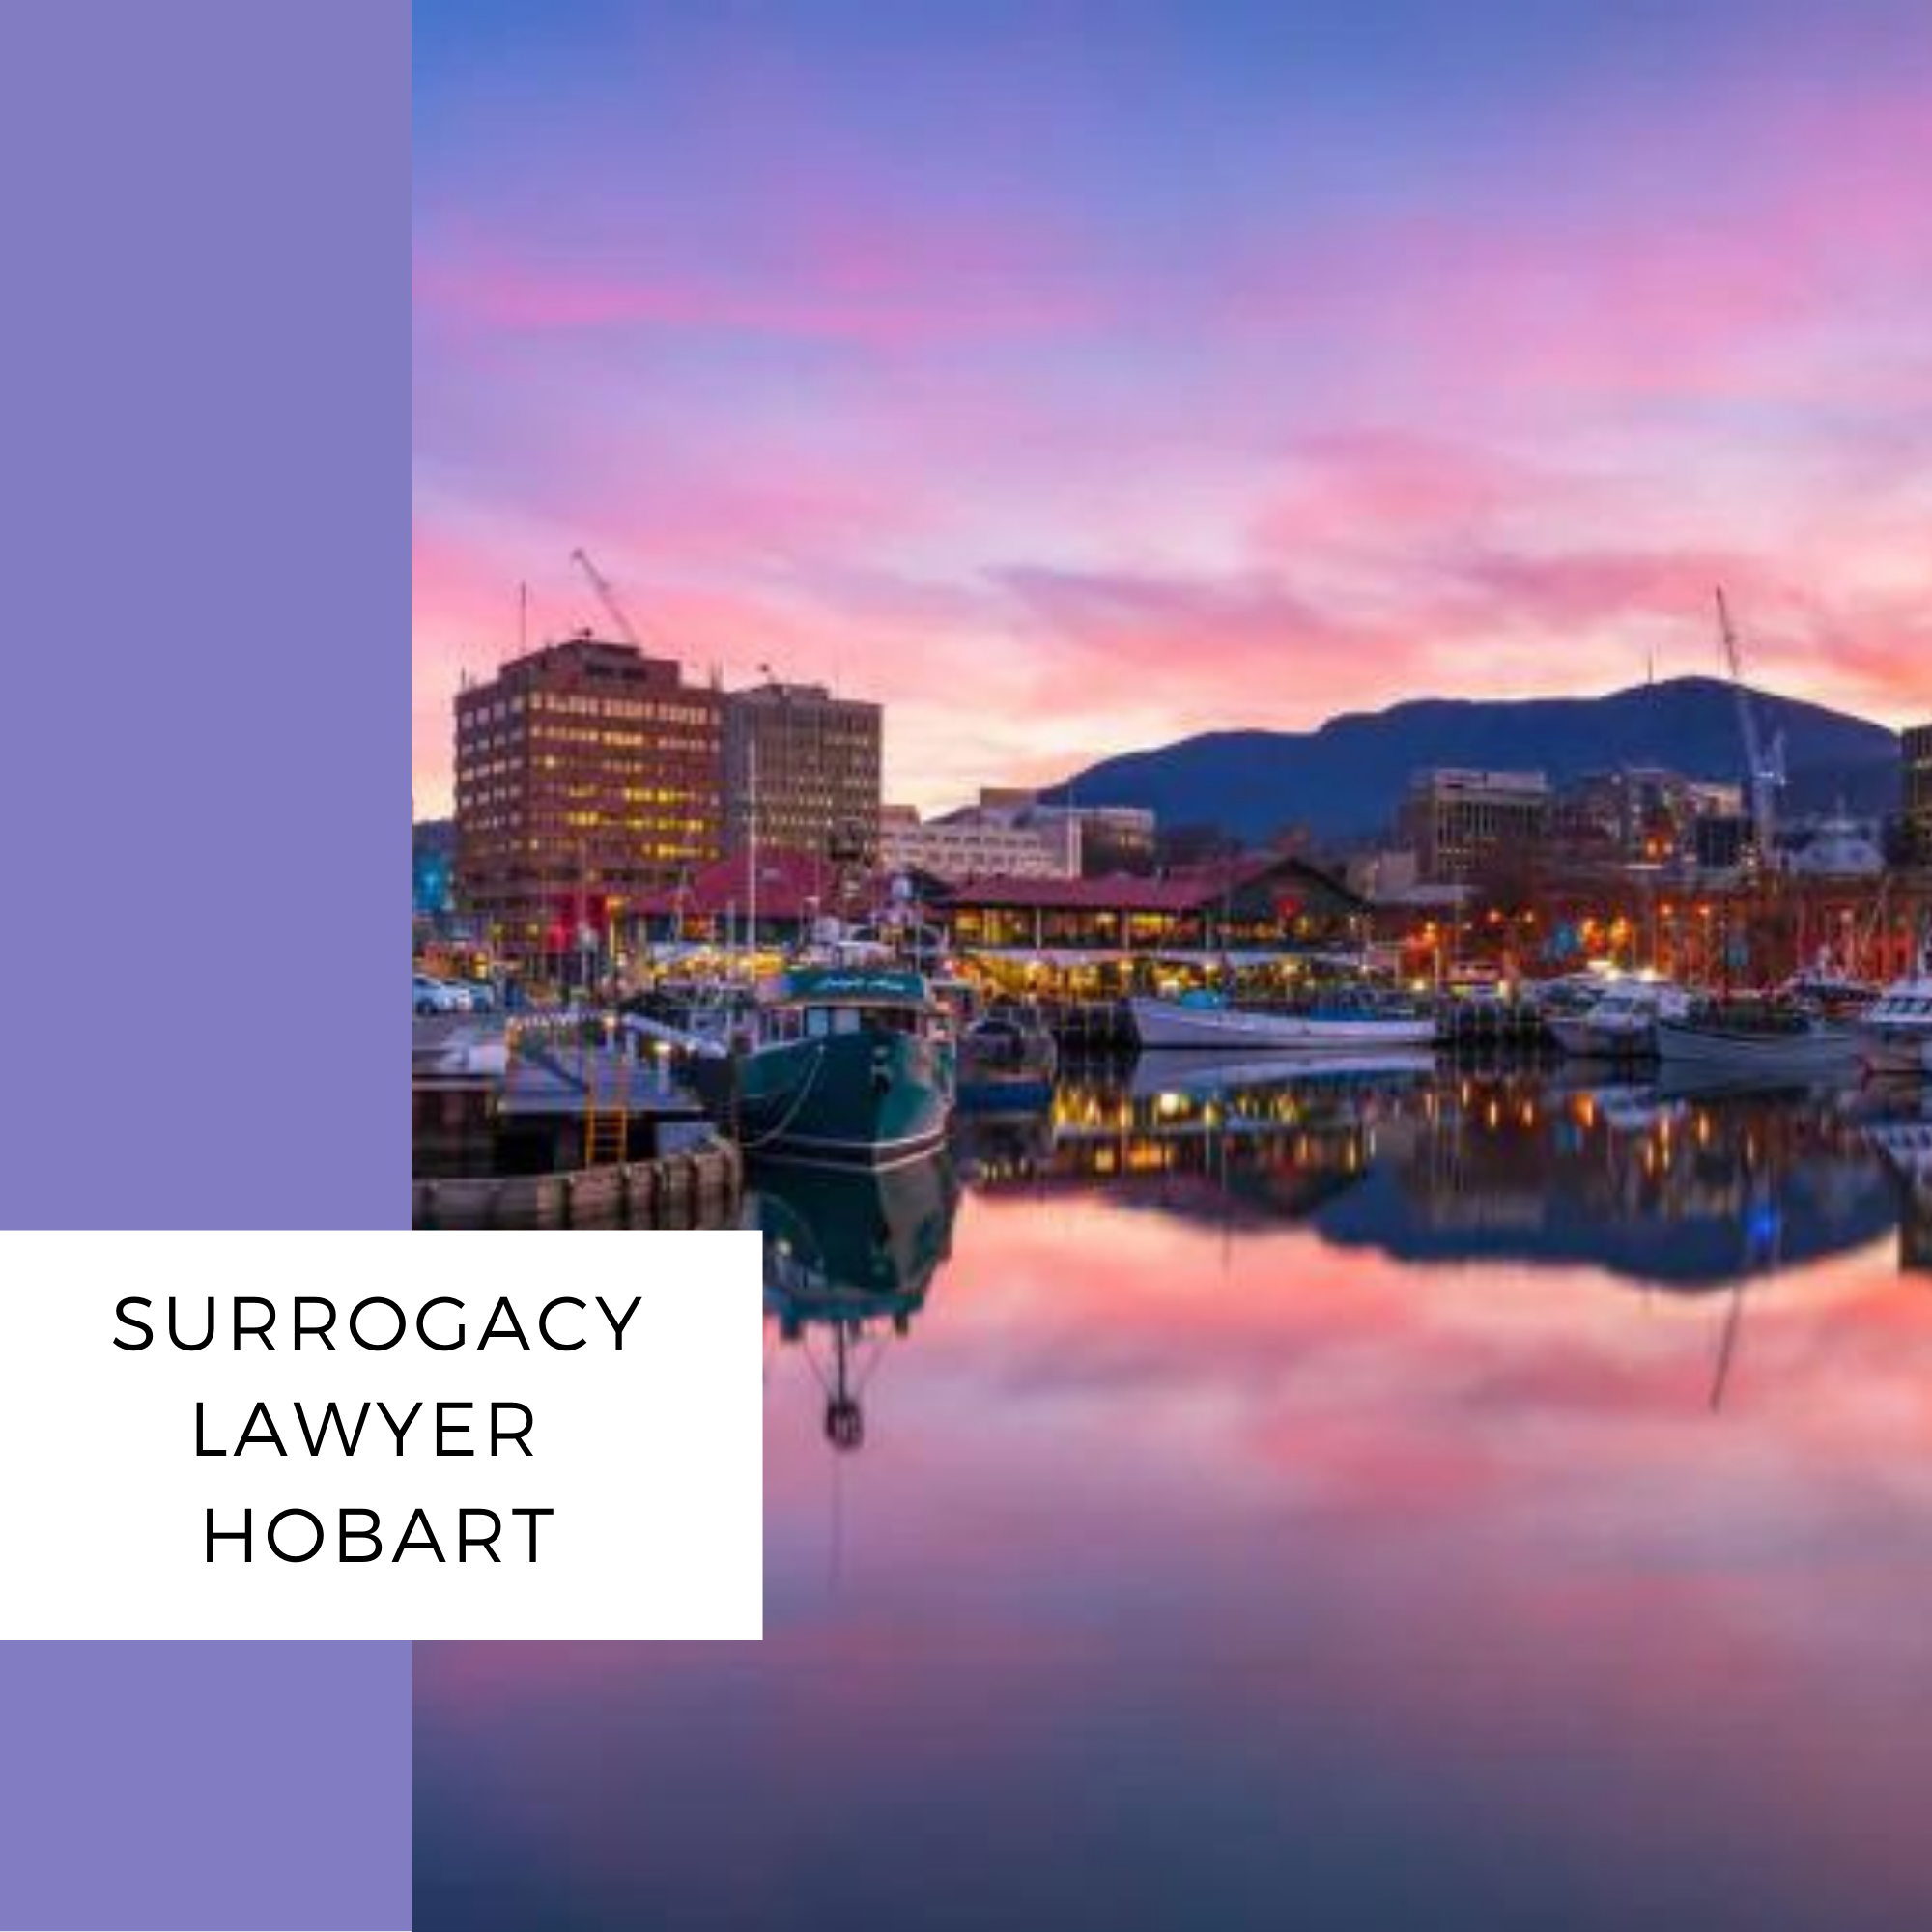 surrogacy lawyer hobart